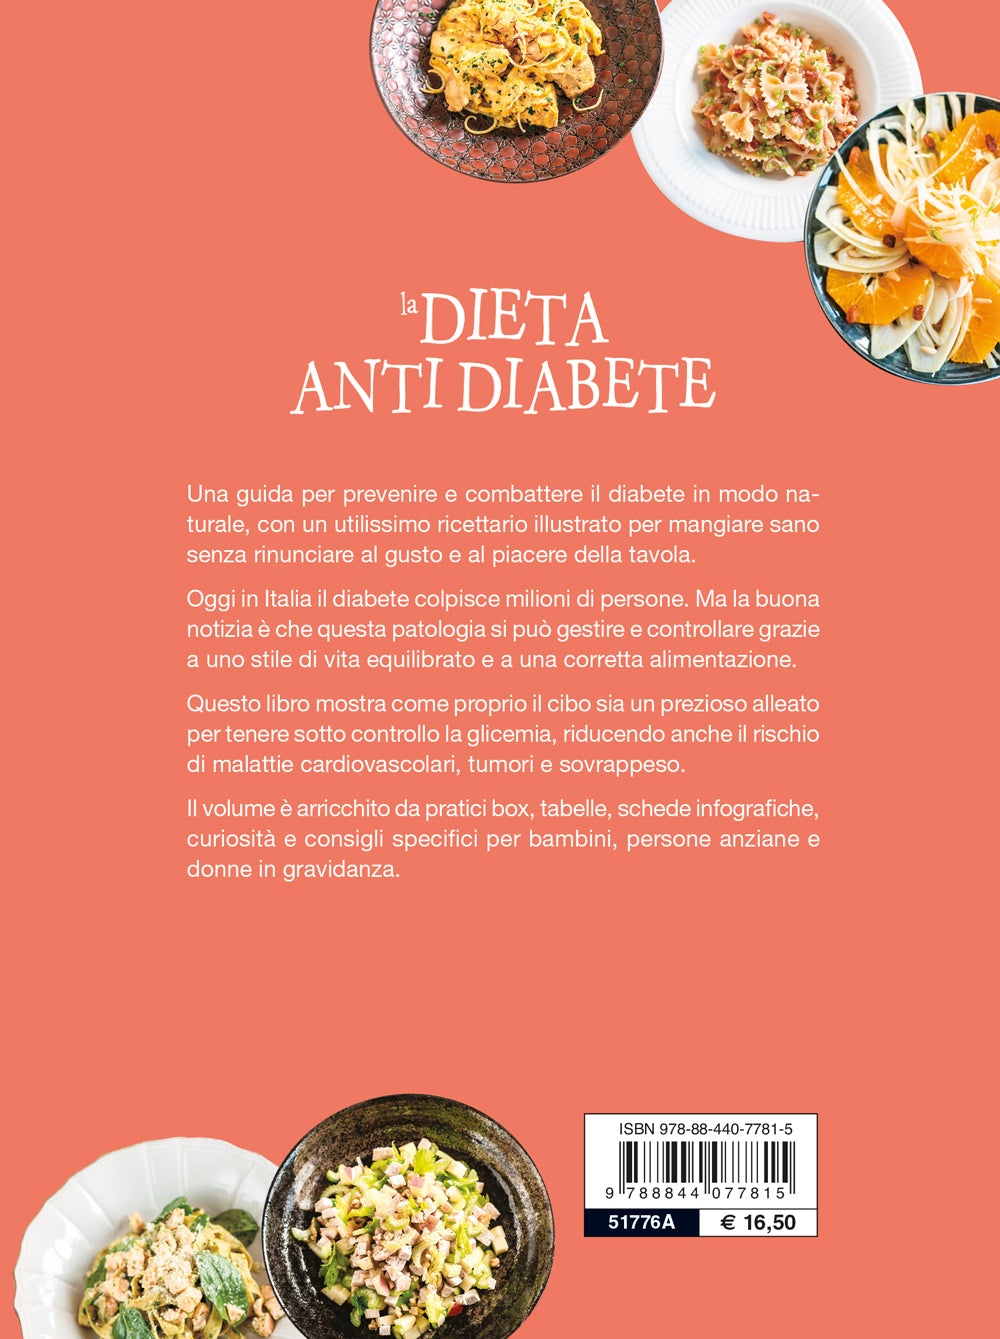 La dieta antidiabete::Consigli e ricette per combatterlo e prevenirlo